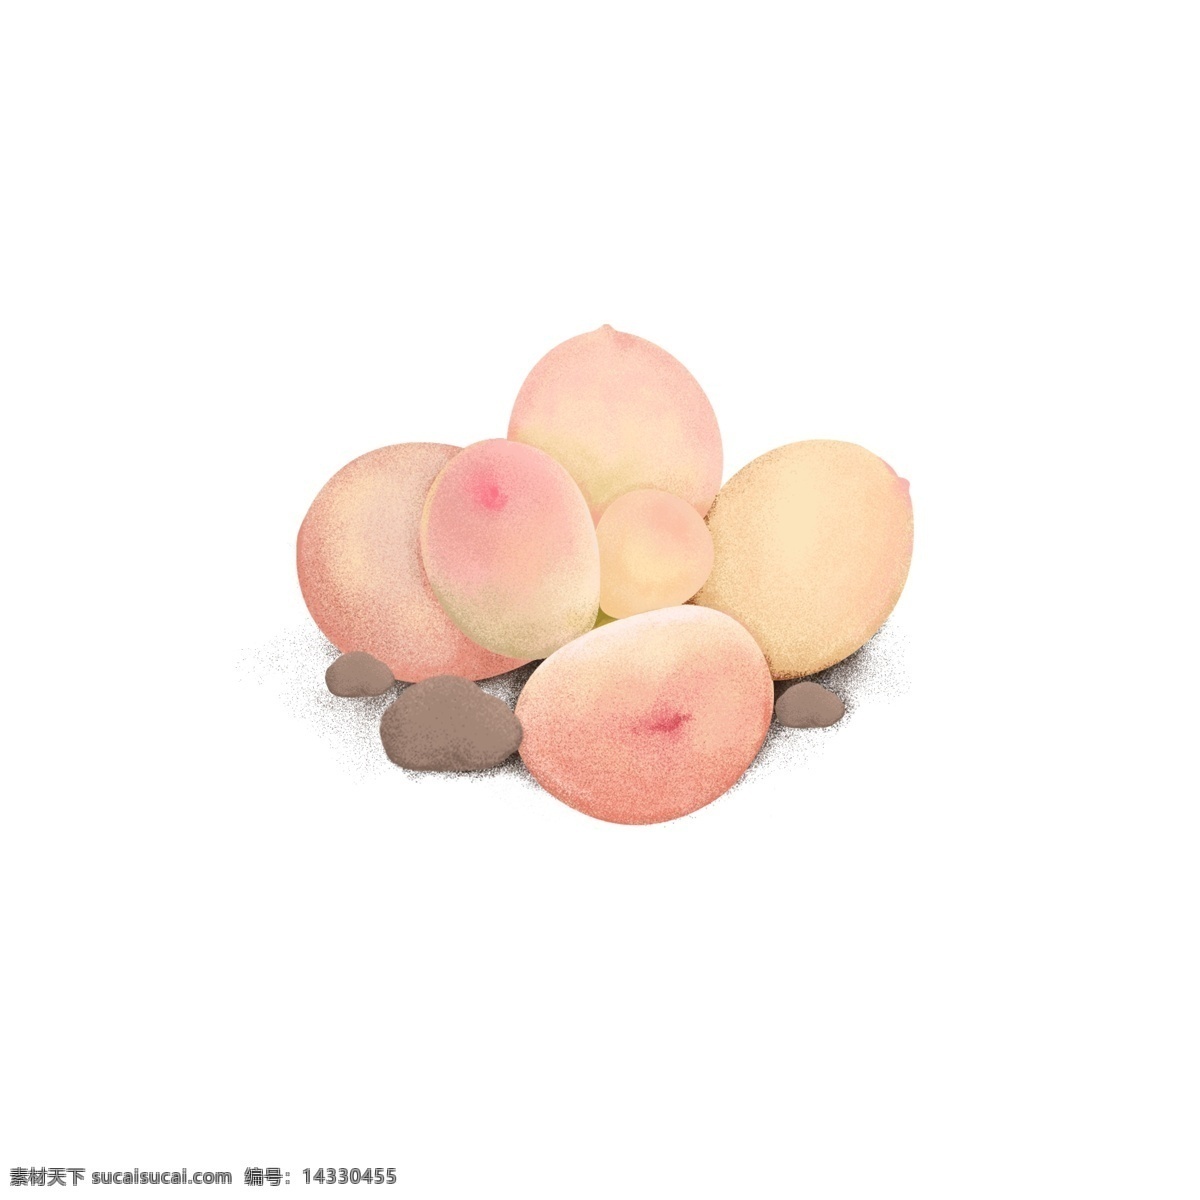 粉色 手绘 肉 植物 桃子 多肉 植物素材 插画 桃蛋 桃之卵